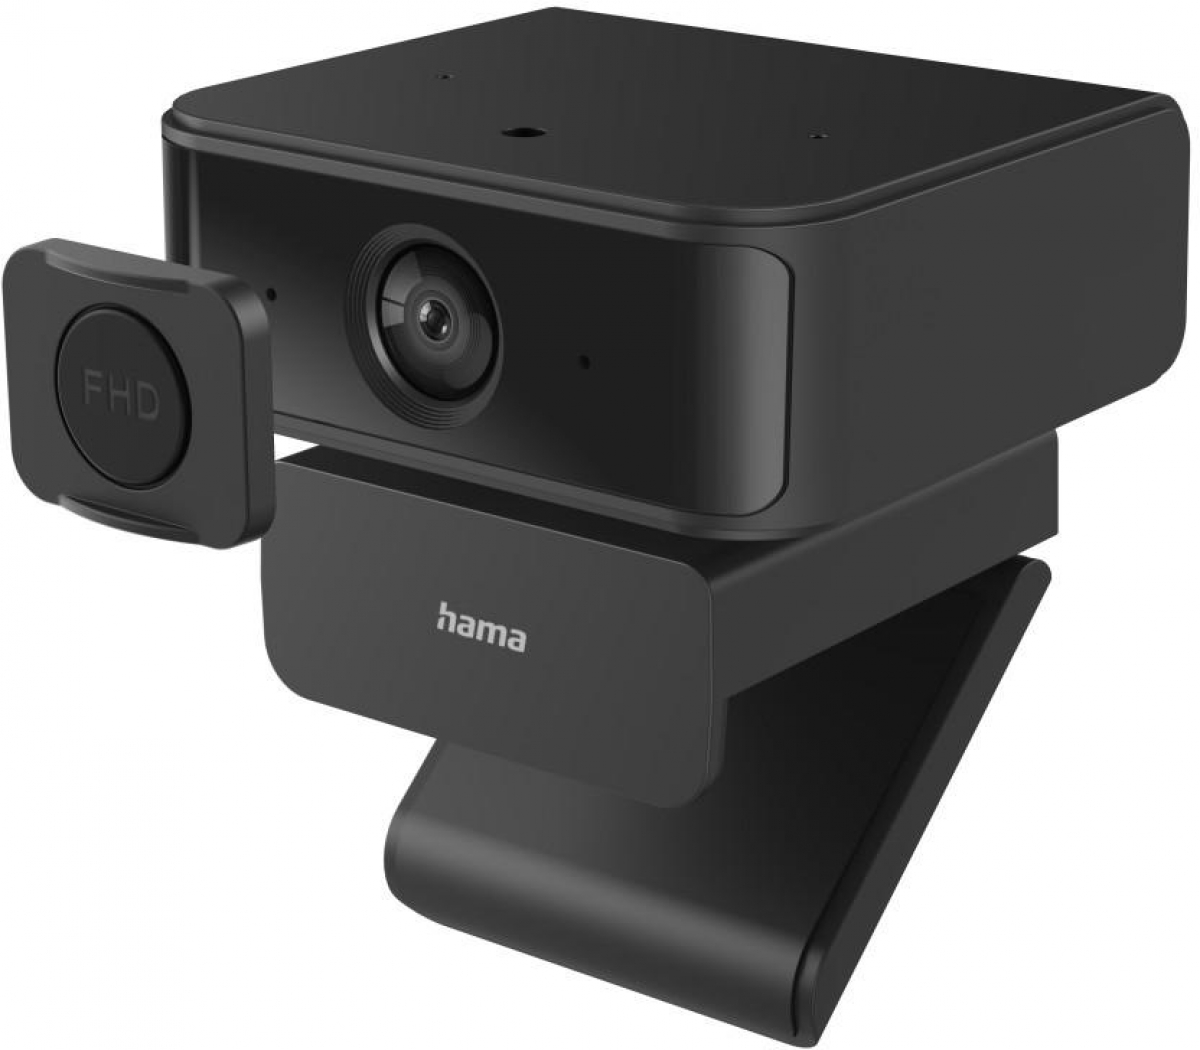 Уеб камера Уеб камера HAMA C-650 Face Tracking, 1080p, Микрофон, USB-C, Чернана ниска цена с бърза доставка